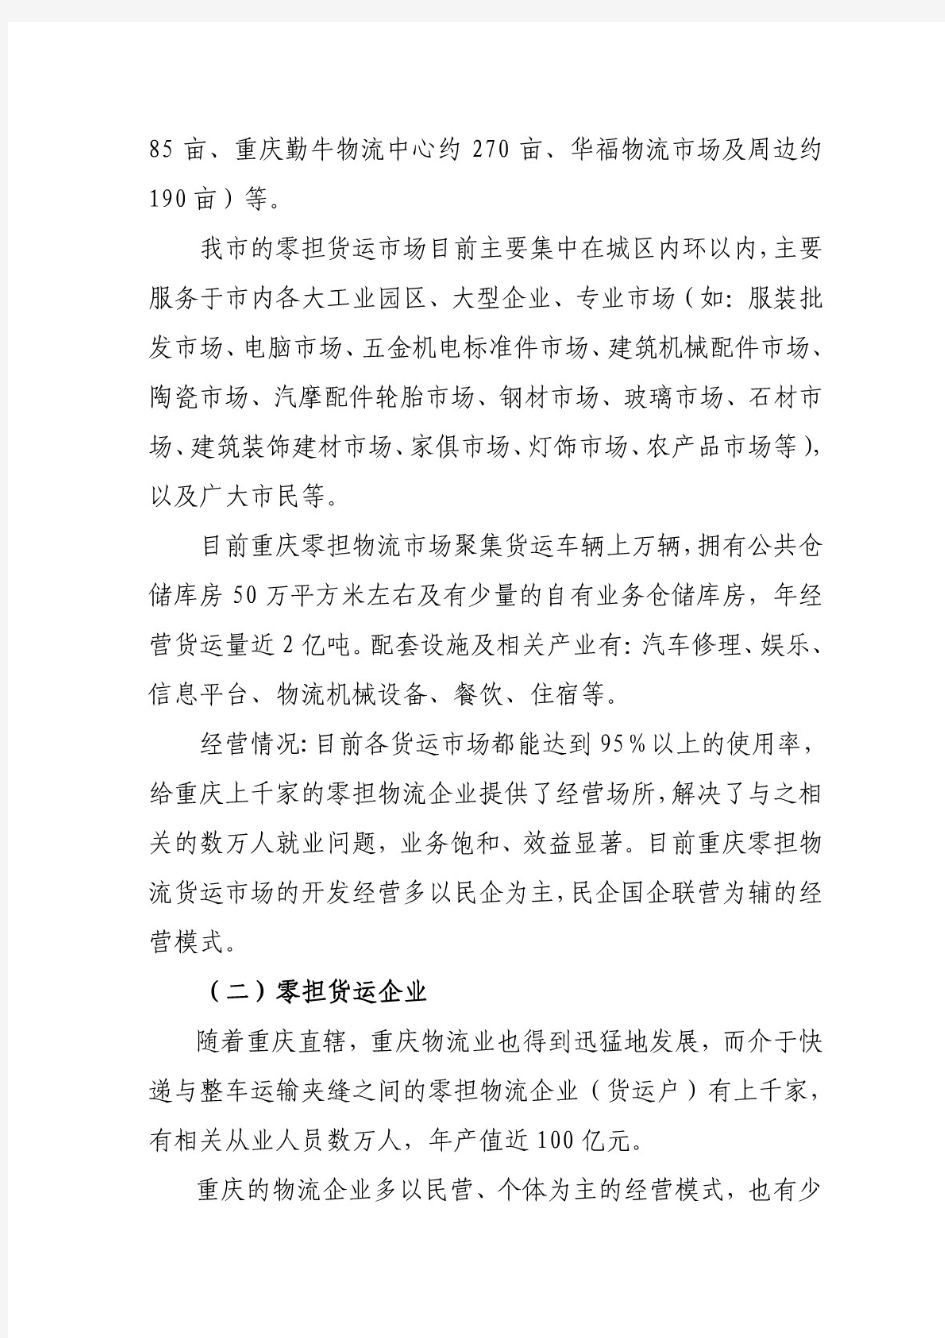 重庆零担专业物流行业发展报告.doc - 重庆市物流协会